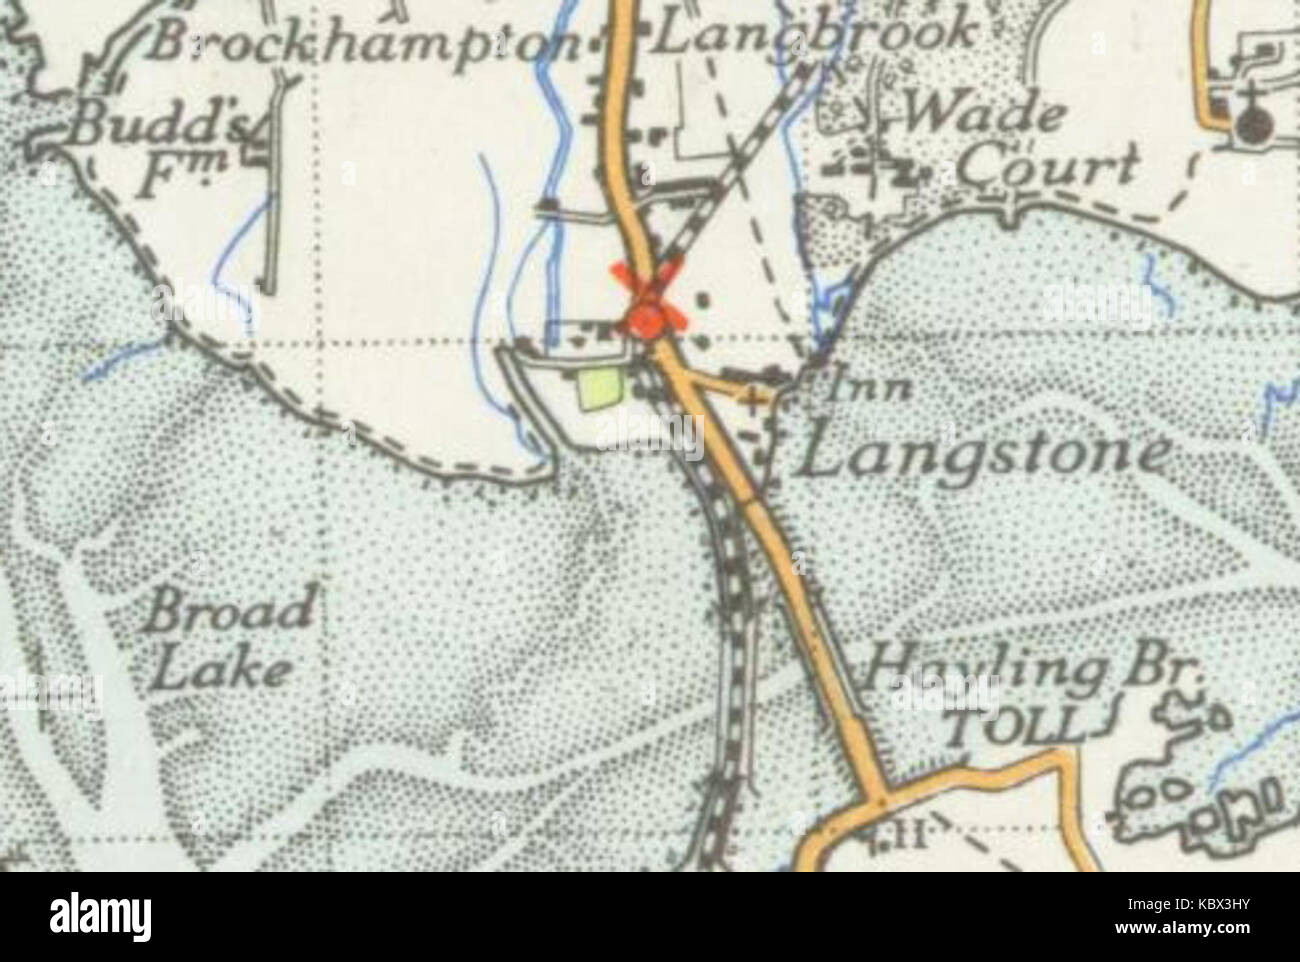 Langstone map 1945 Stock Photo - Alamy